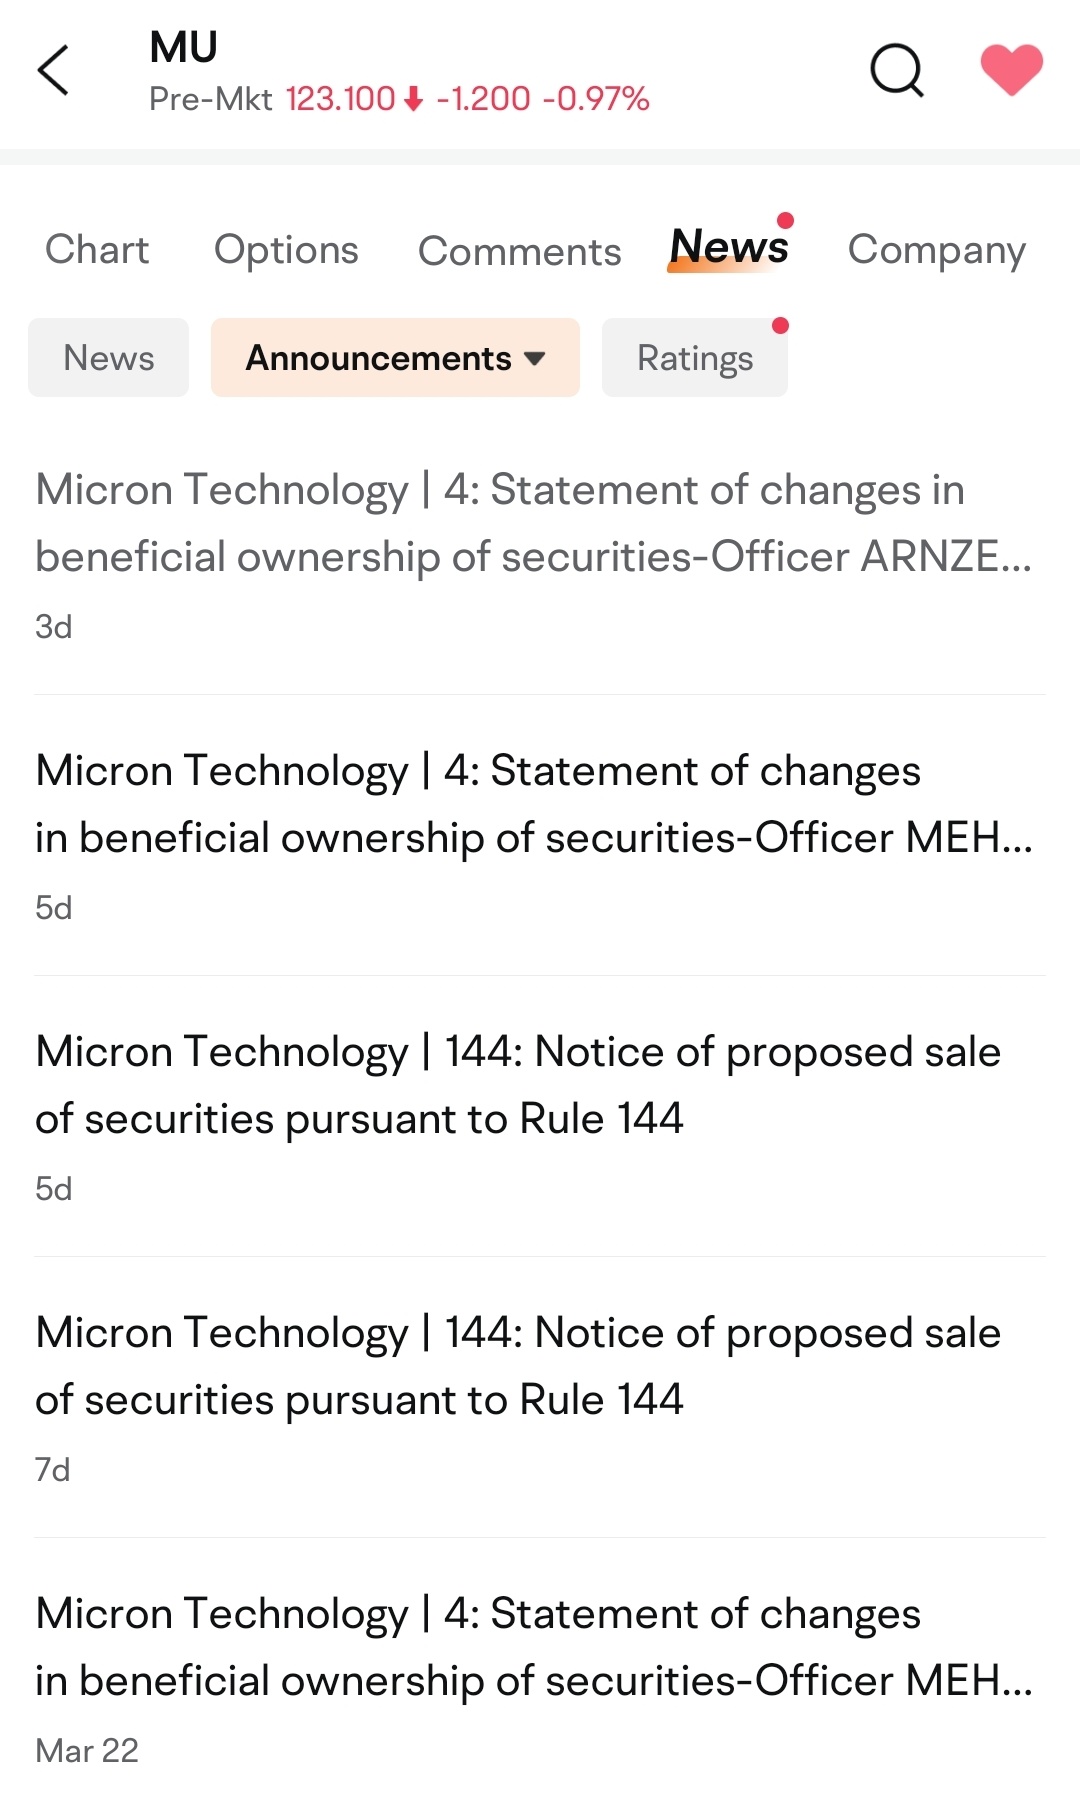 $Micron Technology (MU.US)$